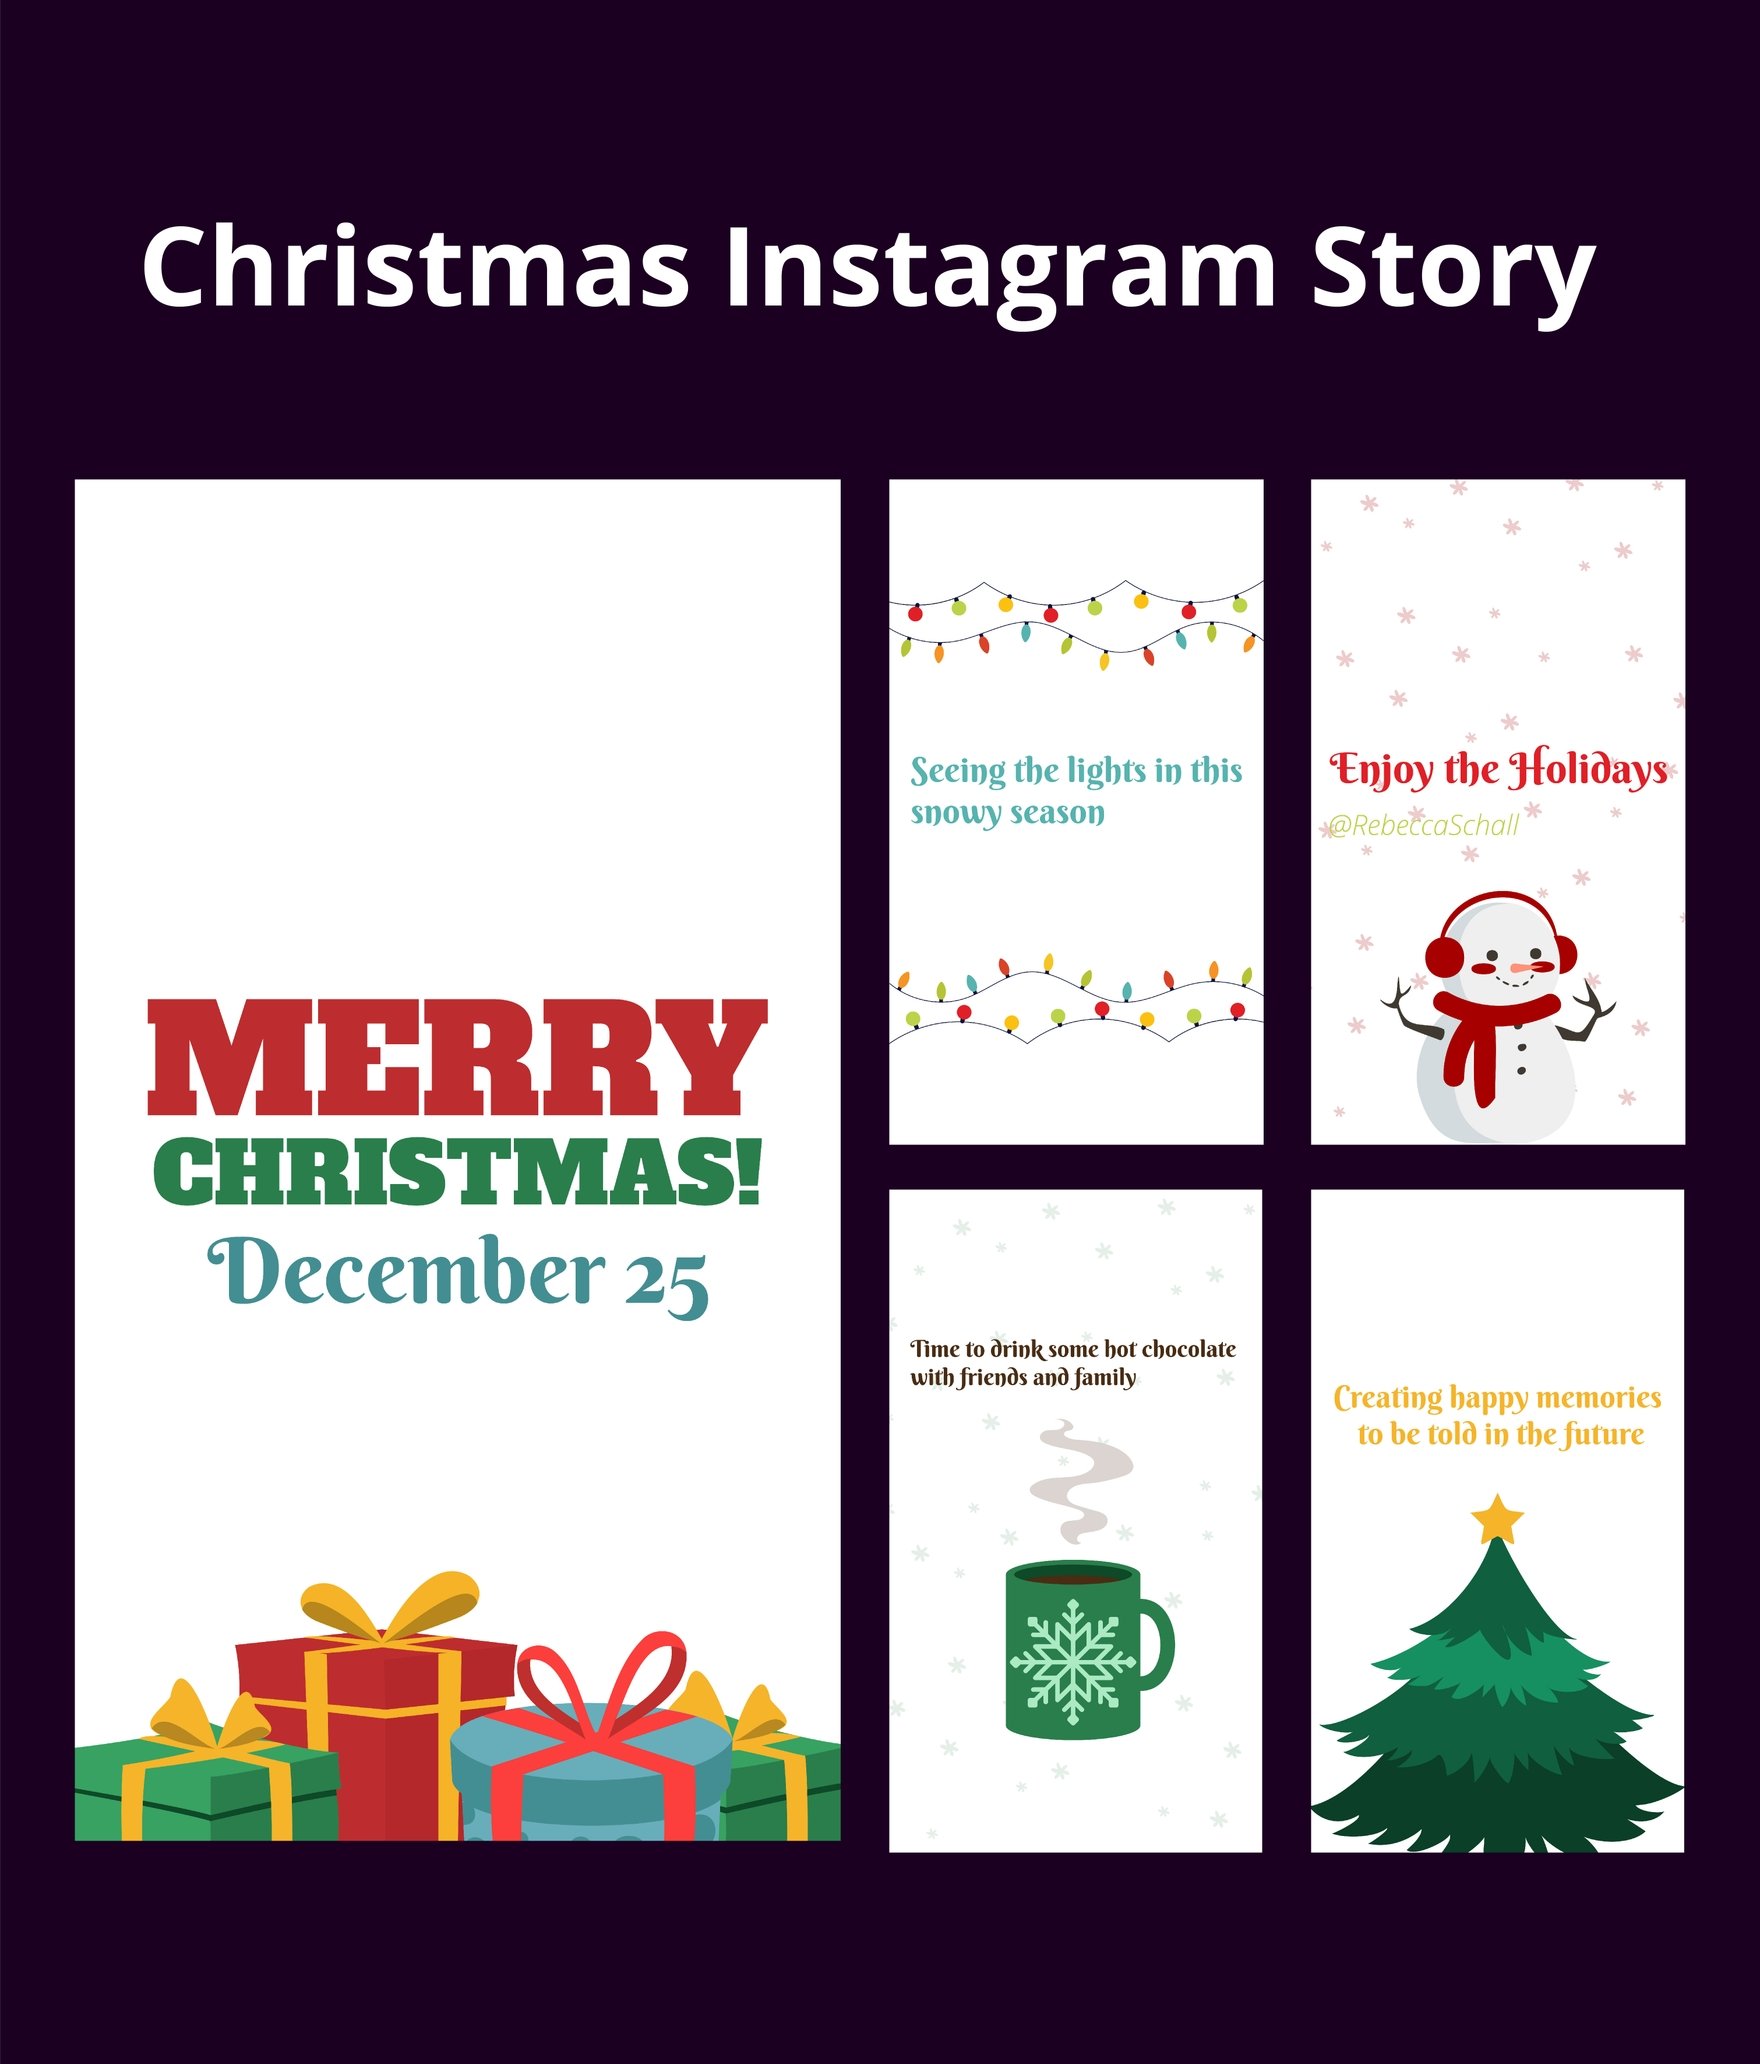 Free Christmas Instragram Story in Illustrator, PSD, EPS, SVG, JPG, PNG